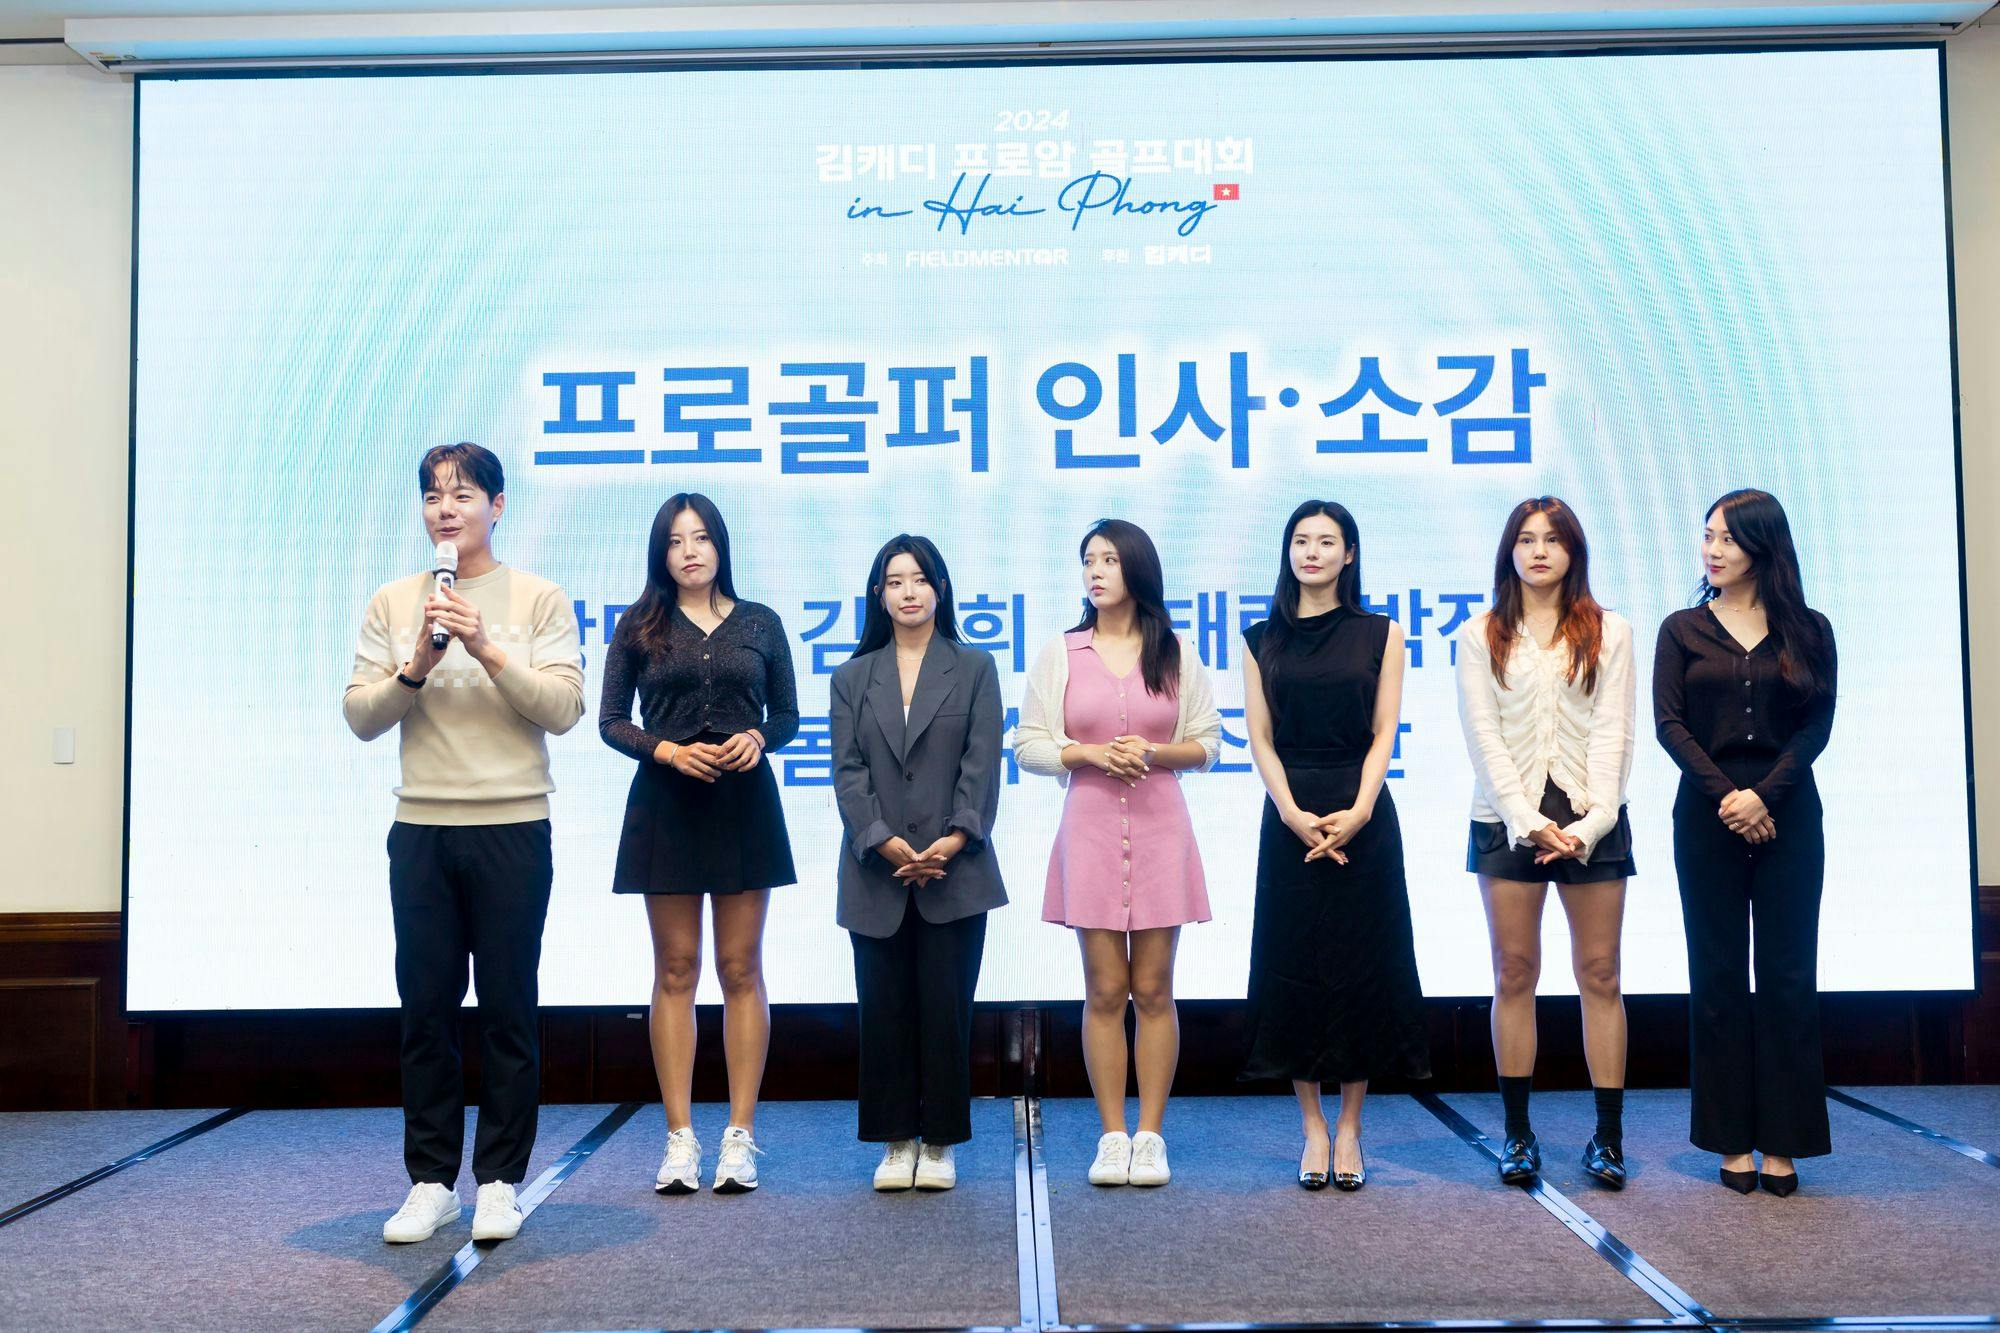 왼쪽부터 강덕균, 이봄, 김동휘, 김태림, 박진이, 이수지, 조아란 프로